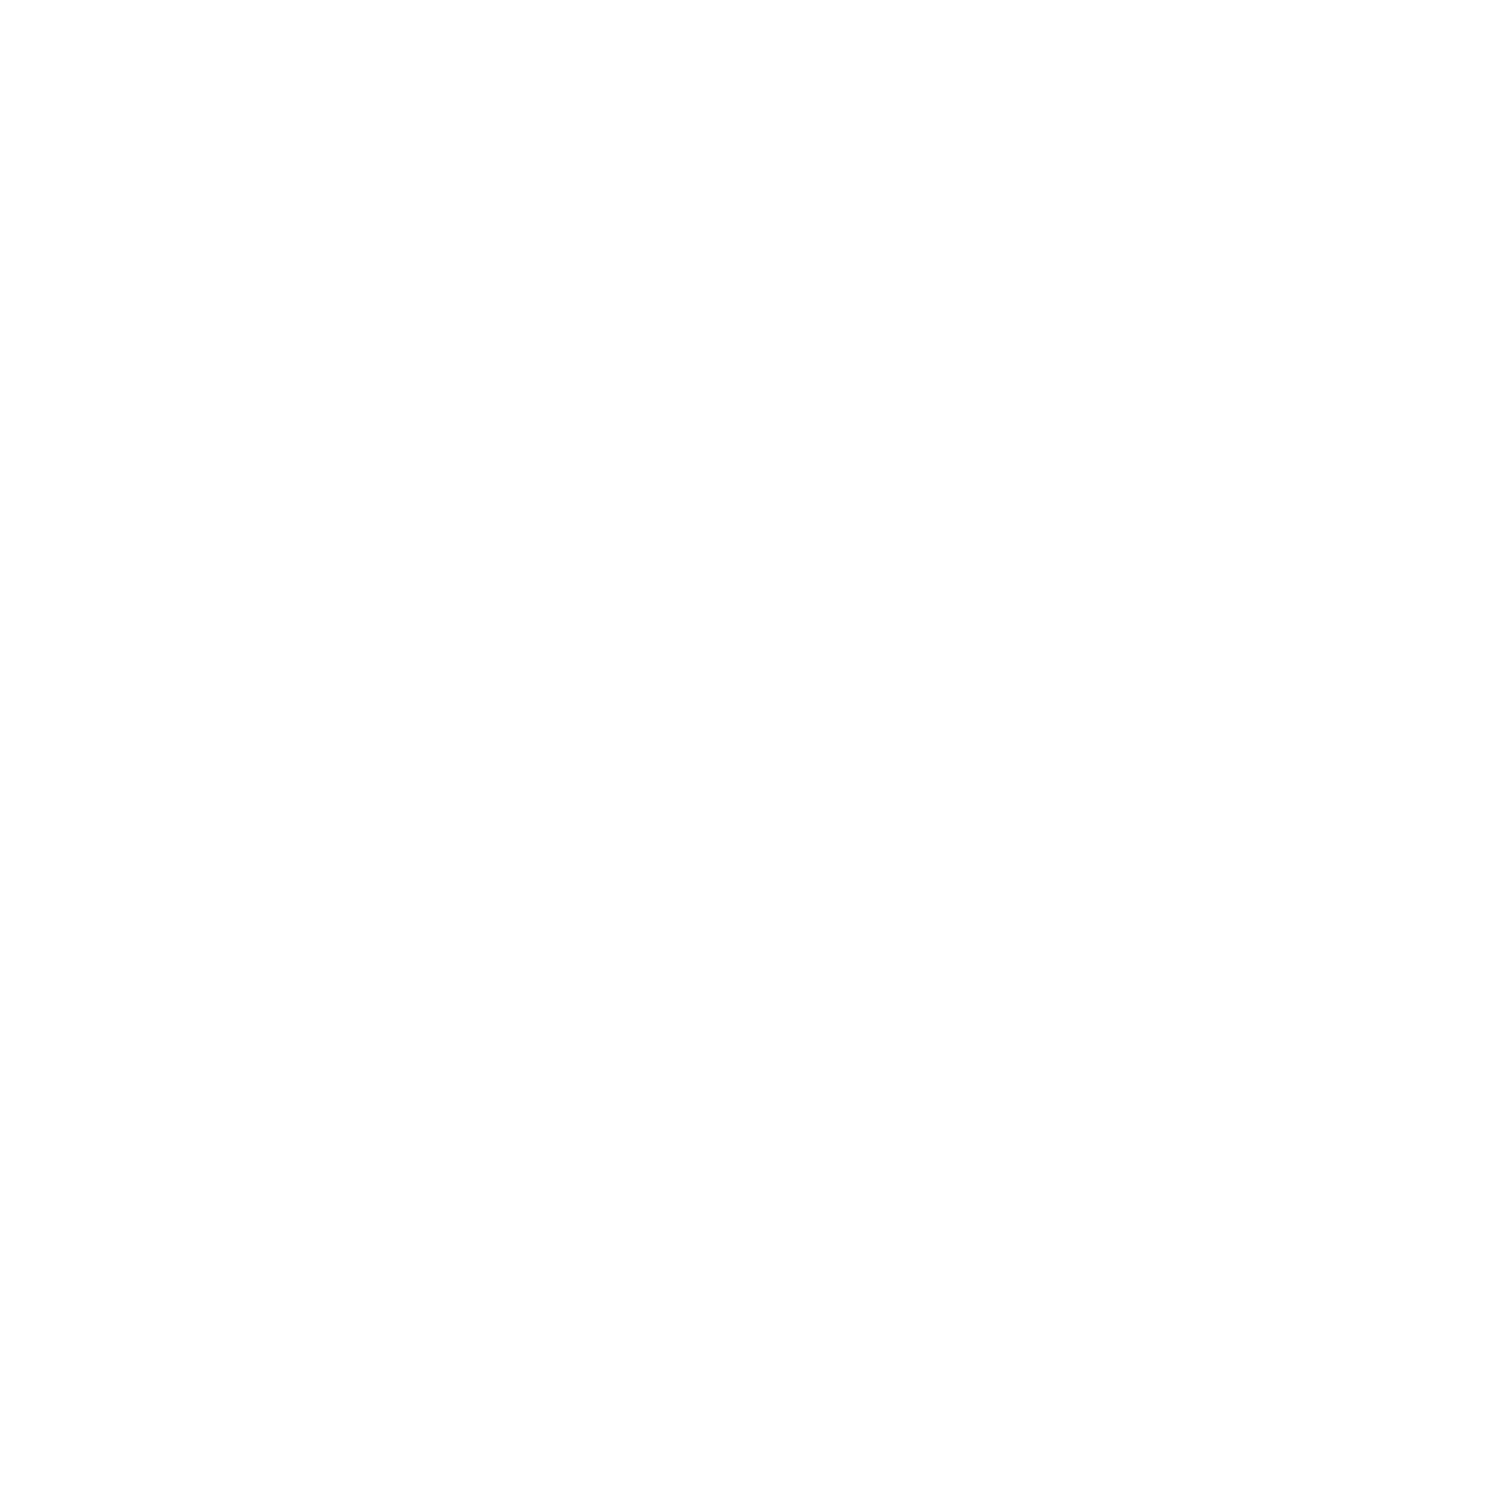 Ageless Aesthetics of Arkansas